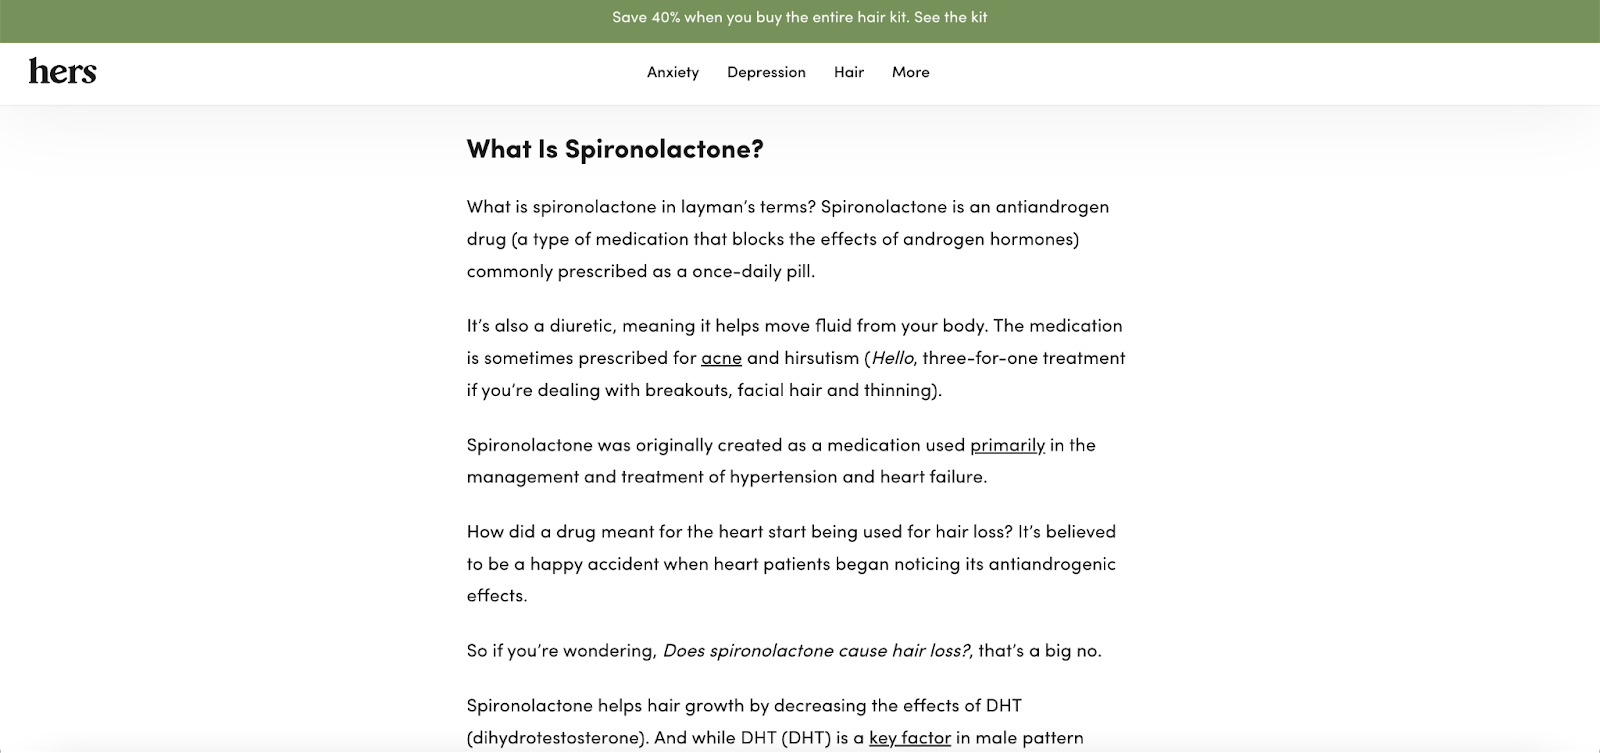 La imagen muestra la descripción de la espironolactona, uno de los productos de Hers. Es un esfuerzo por proporcionar a los usuarios detalles claros del producto.